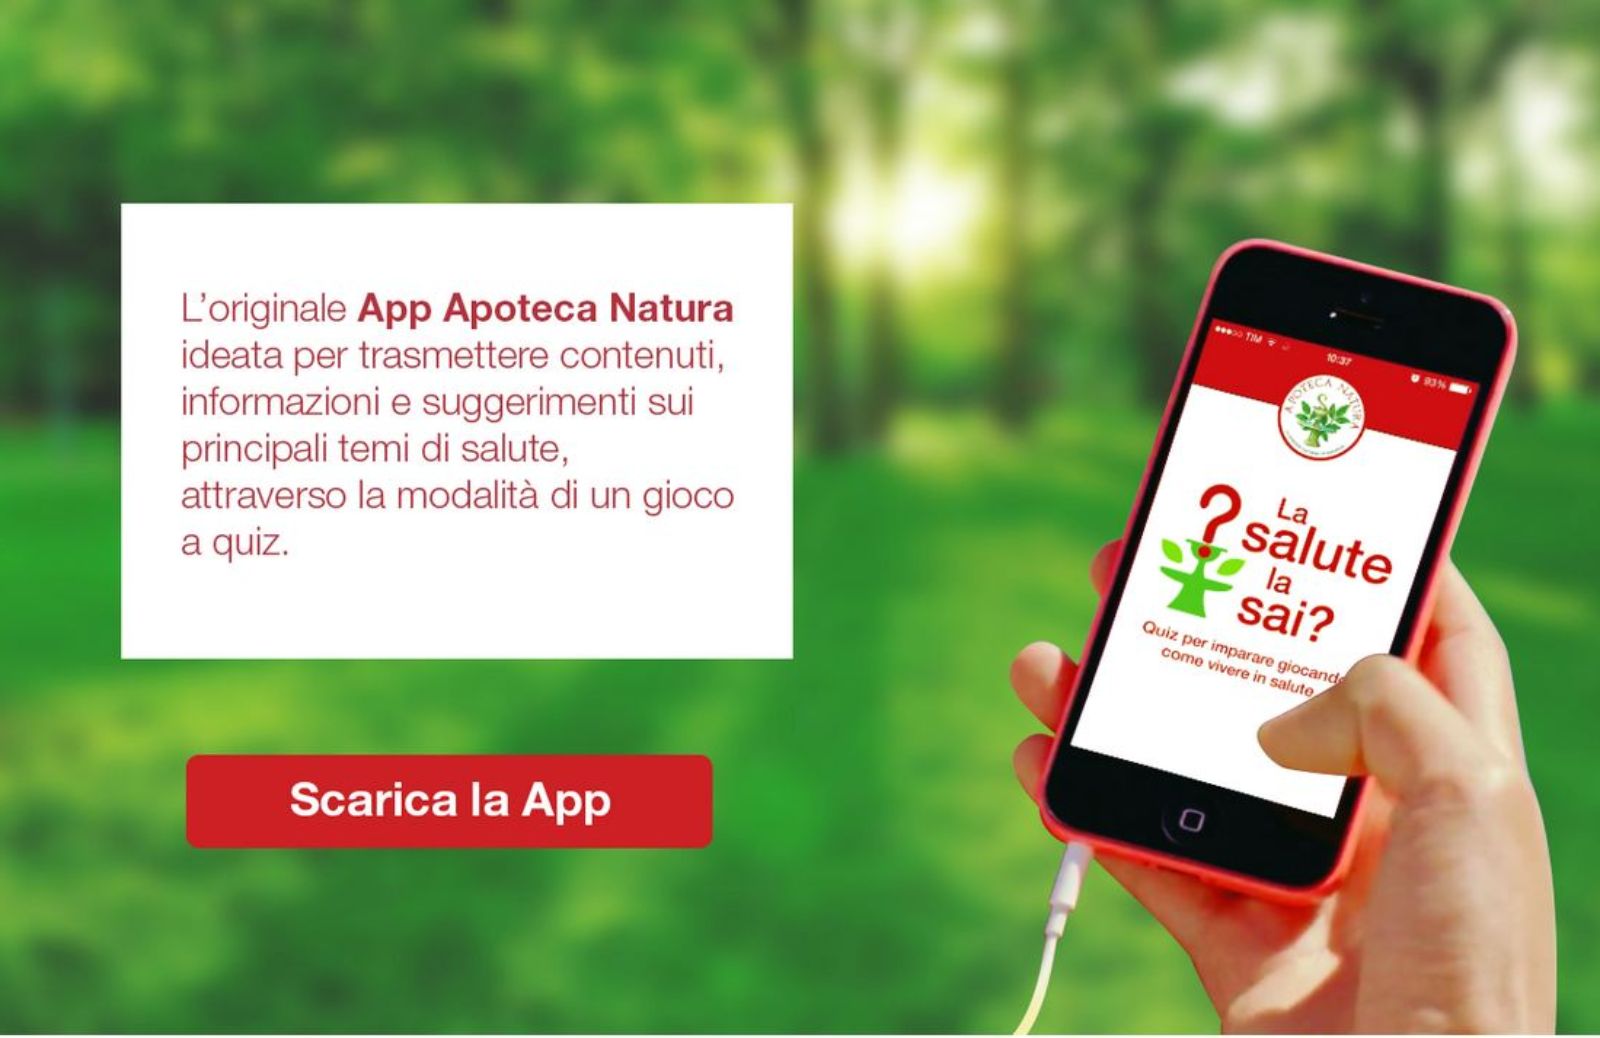 “La salute la sai?”: la nuova app Apoteca Natura che fa bene alla salute